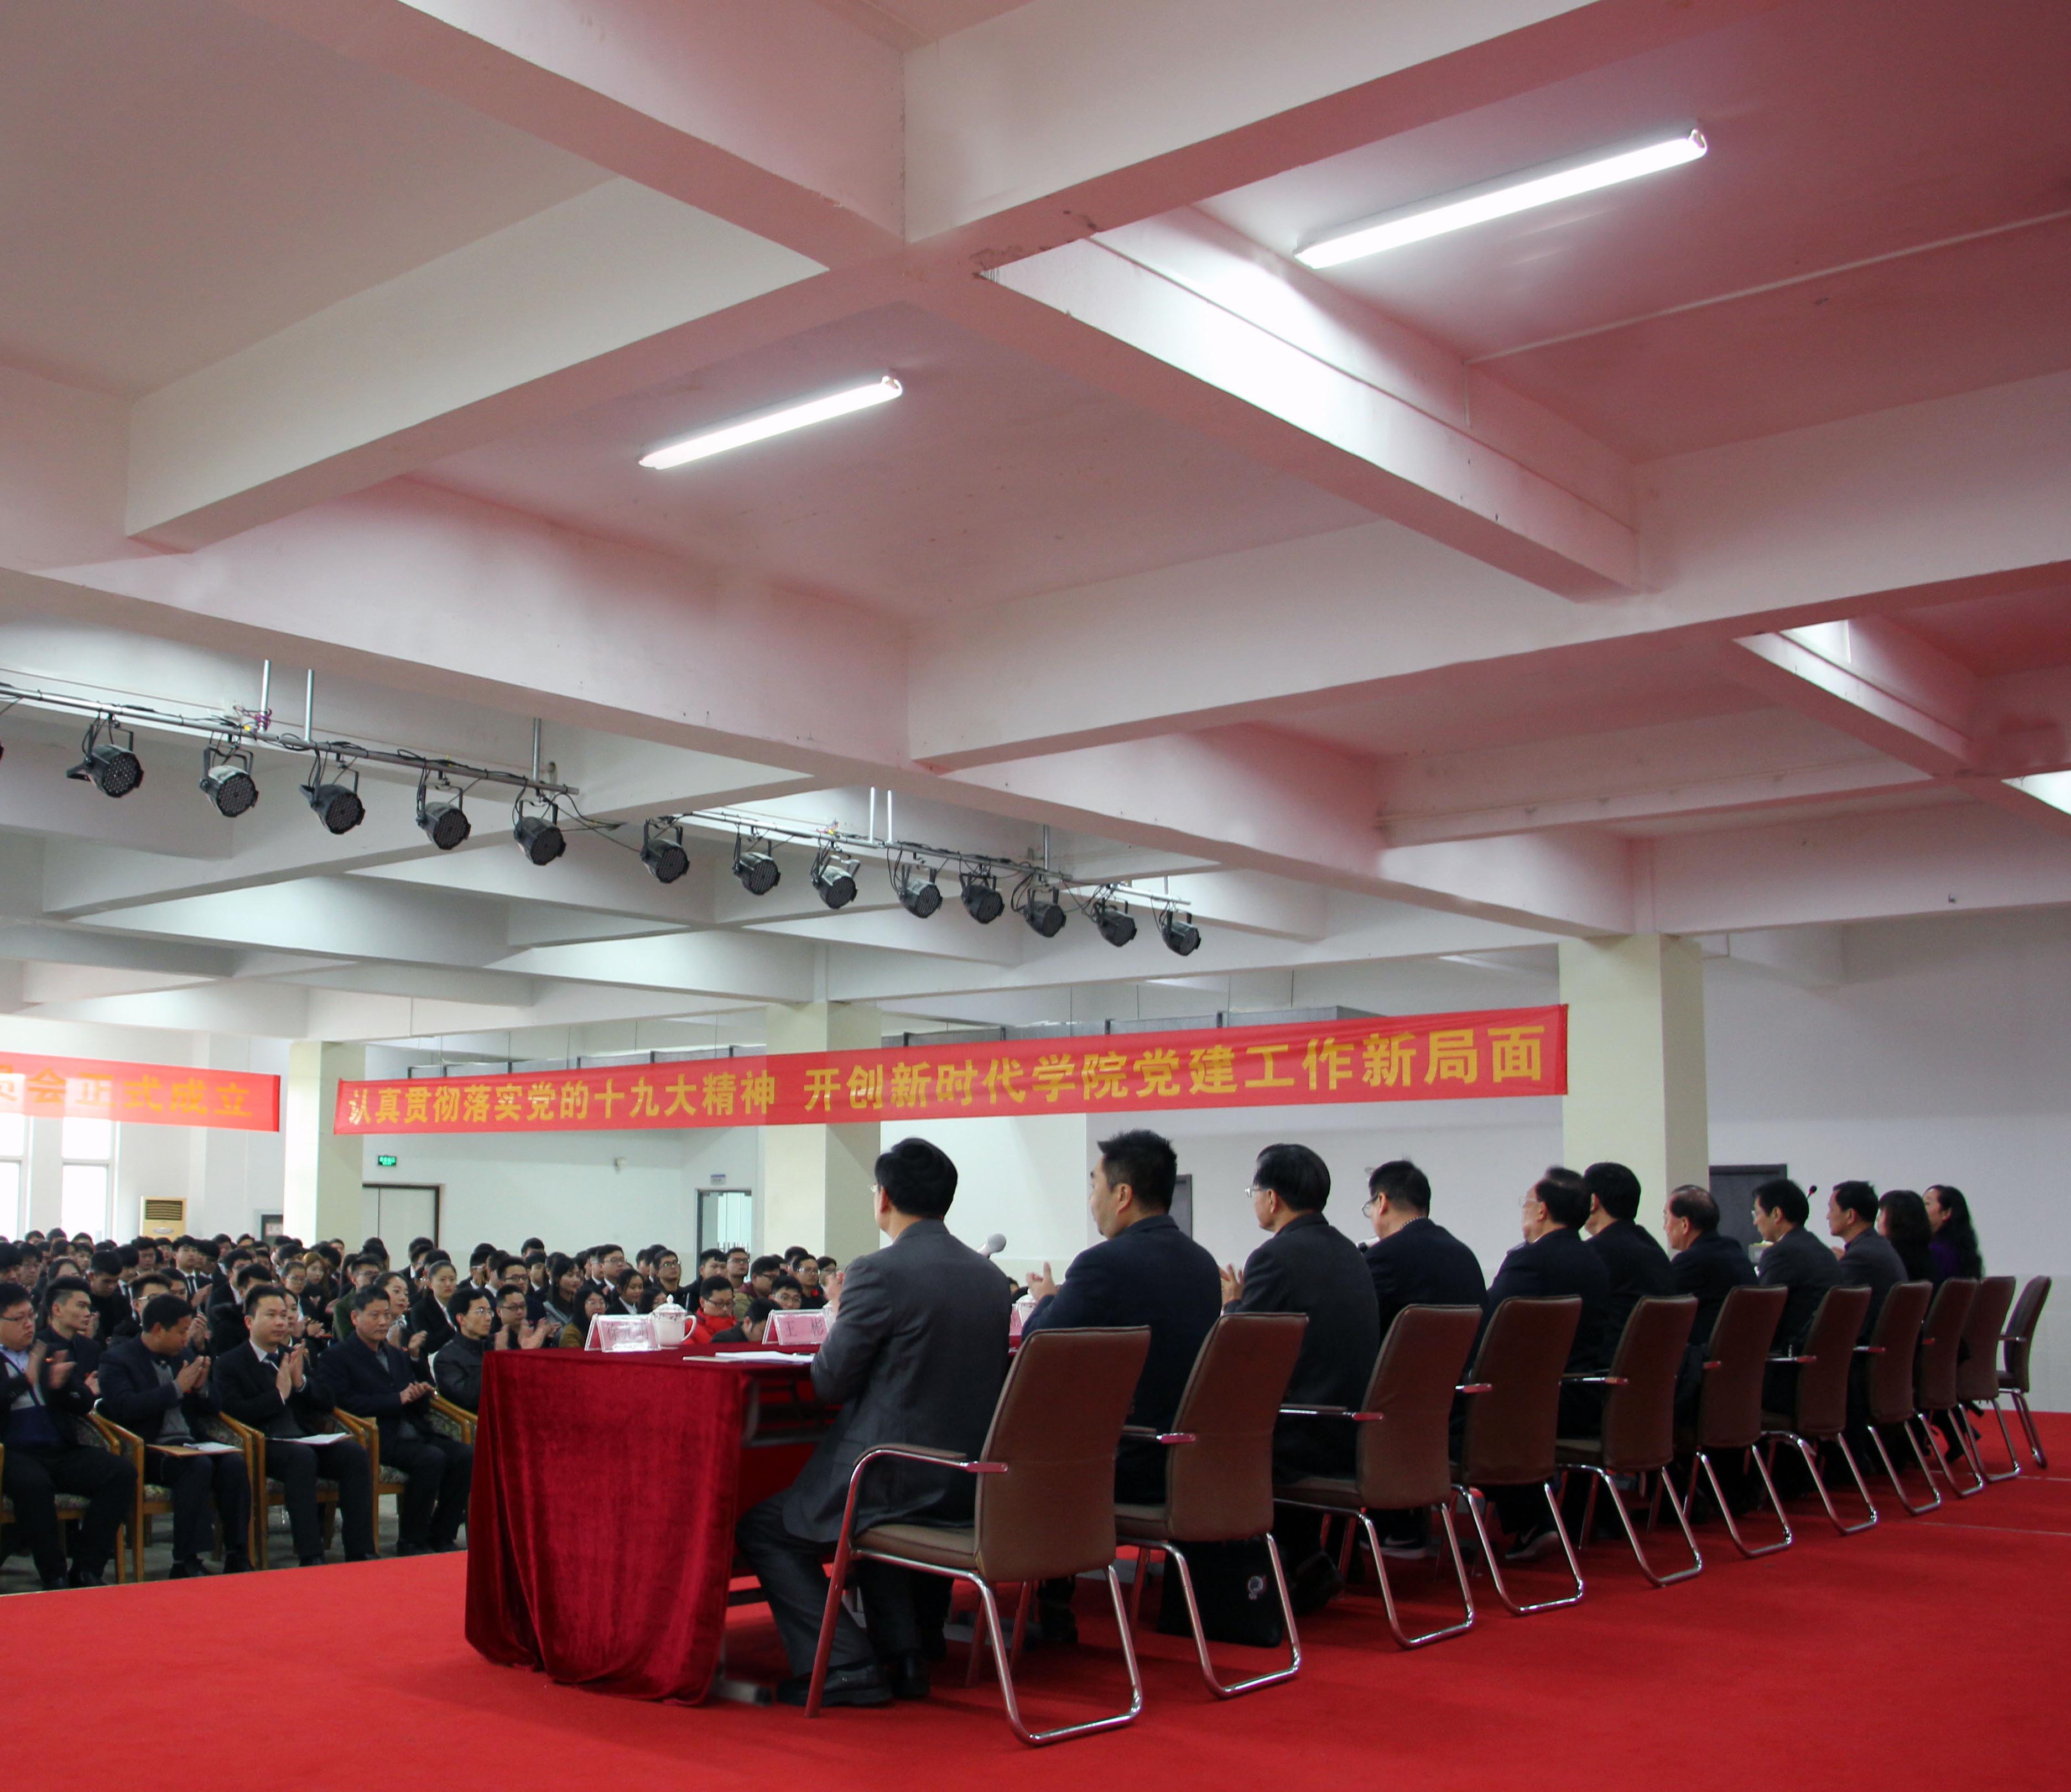 中国共产党合肥科技职业学院第一次党员大会暨党委成立大会隆重召开